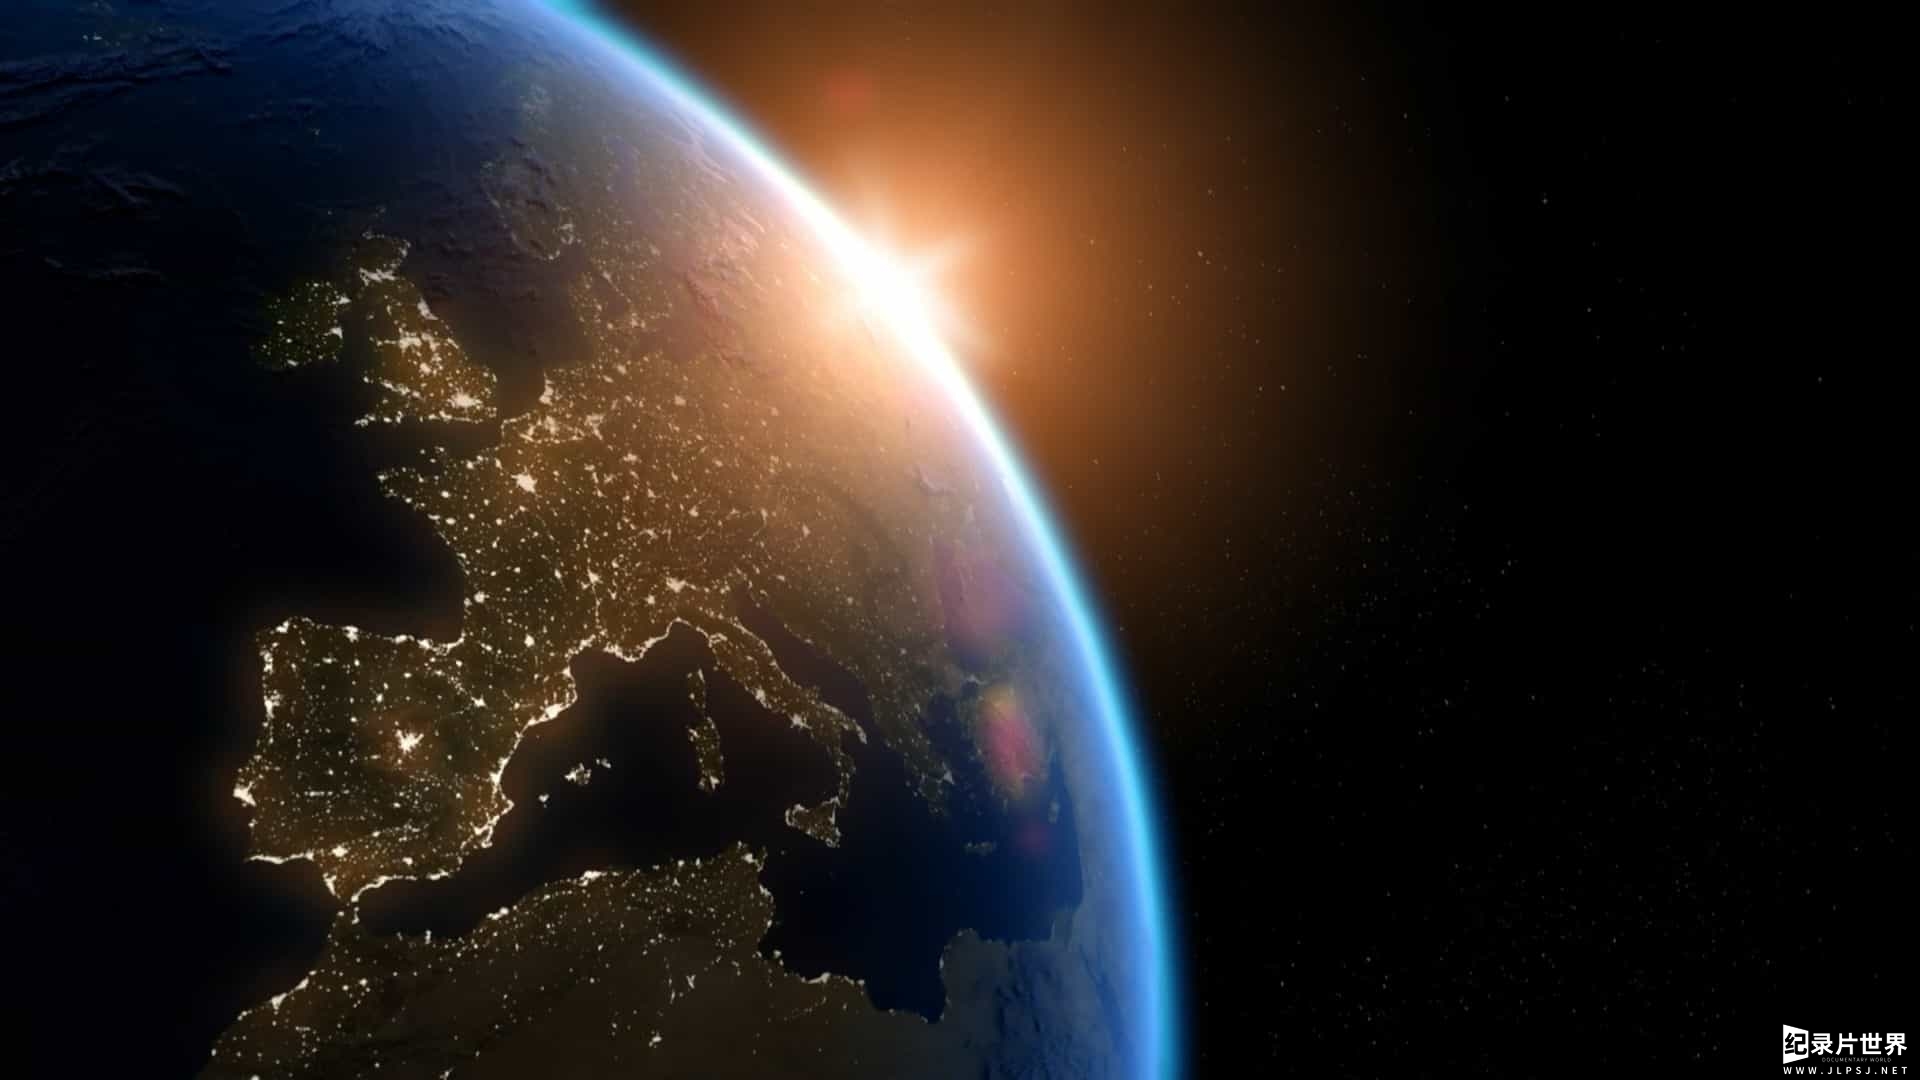 BBC纪录片《地球造人/地球创世纪 How Earth Made Us》全5集